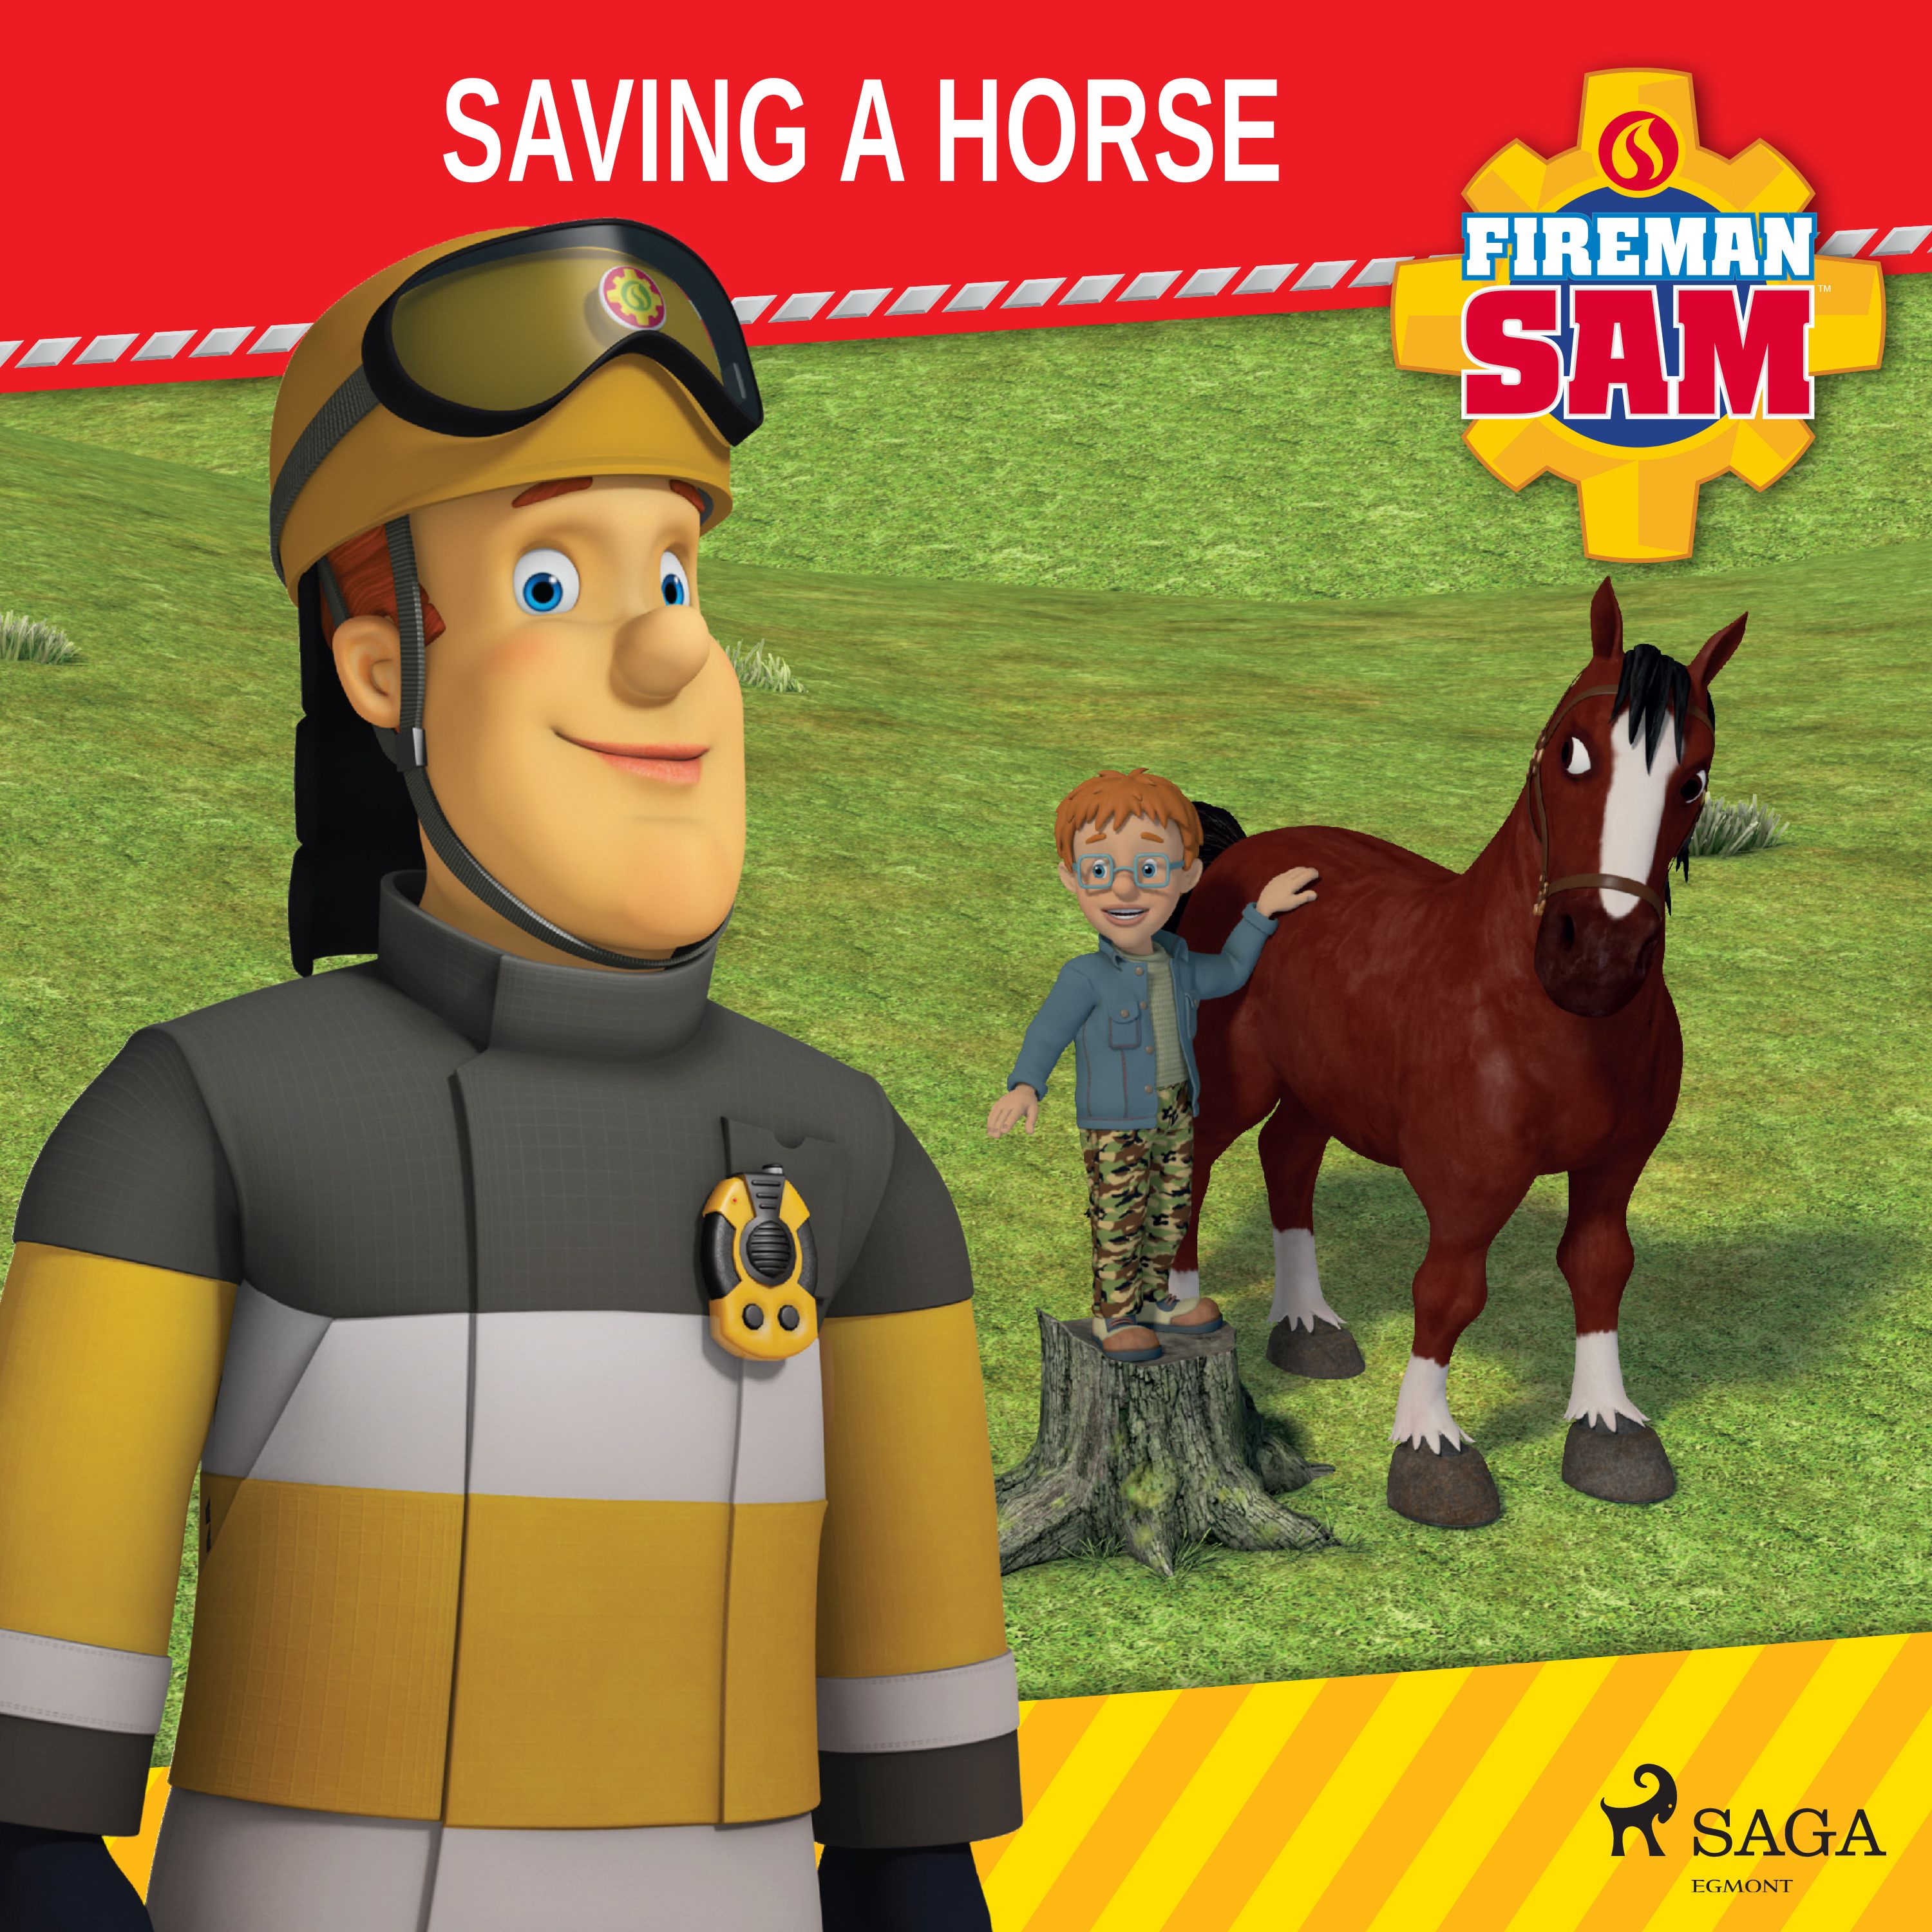 Fireman Sam - Saving a Horse, ljudbok av Mattel